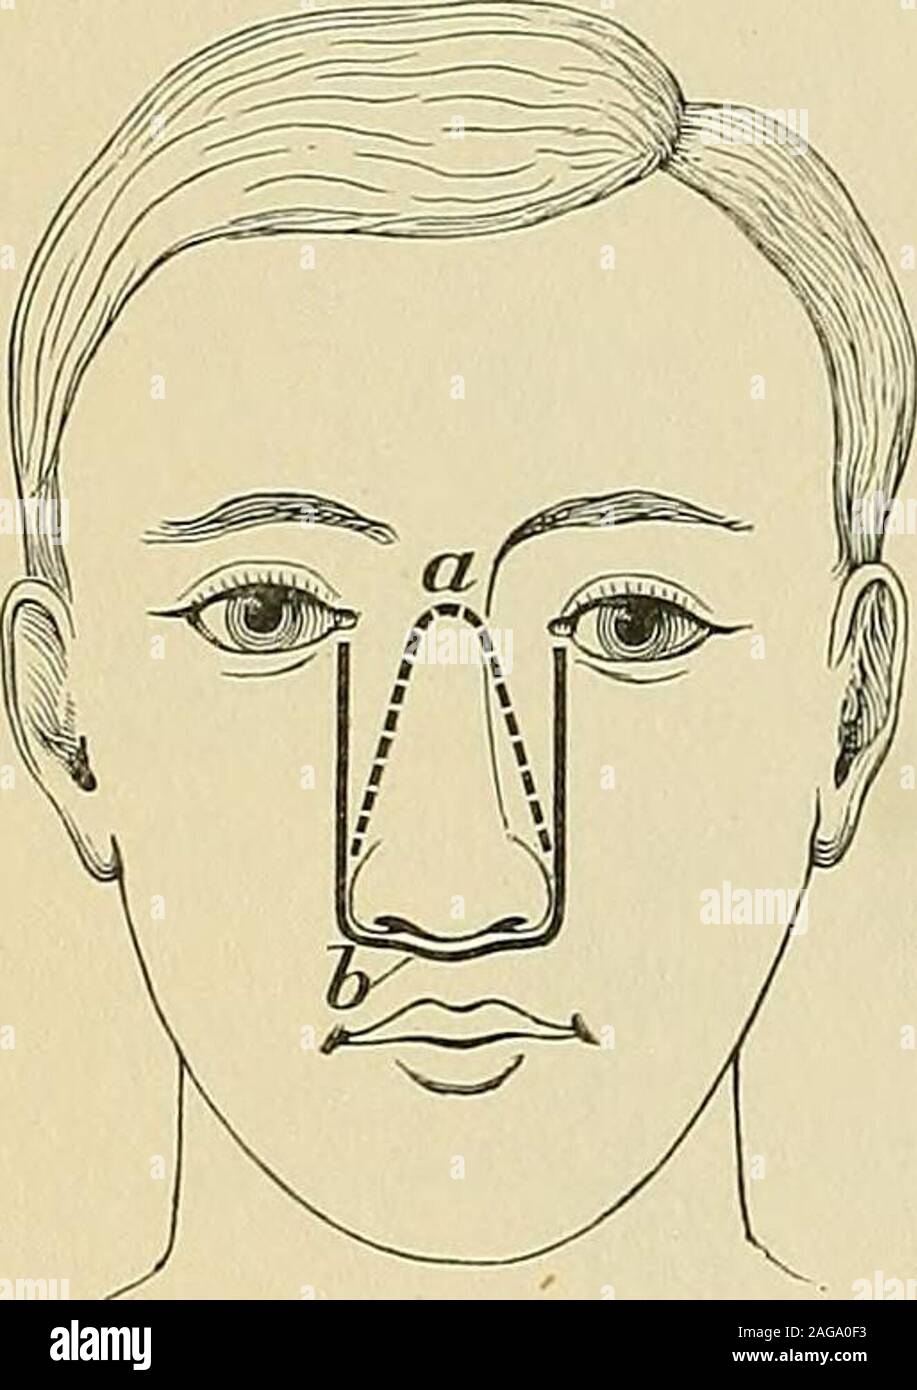 . Operative Chirurgie. Die konvexe Teil der Wurzel von thenose zwischen den Augen, Kreuz, während die Arme nach unten auf jeder Seite von thenose an den äußeren Grenzen der Alse (Fettiger) (Abb. erweitern. 837, a). Die Knochen sind dann durch die in der Zeile der Inzision gesägt, theseptum befreit an Ihren unter der Oberfläche, und thenose nach unten gedreht, damit entlarven die interiorof der Nasenhöhle zu beobachten und manipula- tion. Wenn das Wachstum ein großes und greaterspace werden notwendig sein, der Schnitt kann geändert werden (Abb. 843, a) wie durch die gestrichelte Linie dargestellt, und thebones in seinem Kurs liegen gesägt t Stockfoto